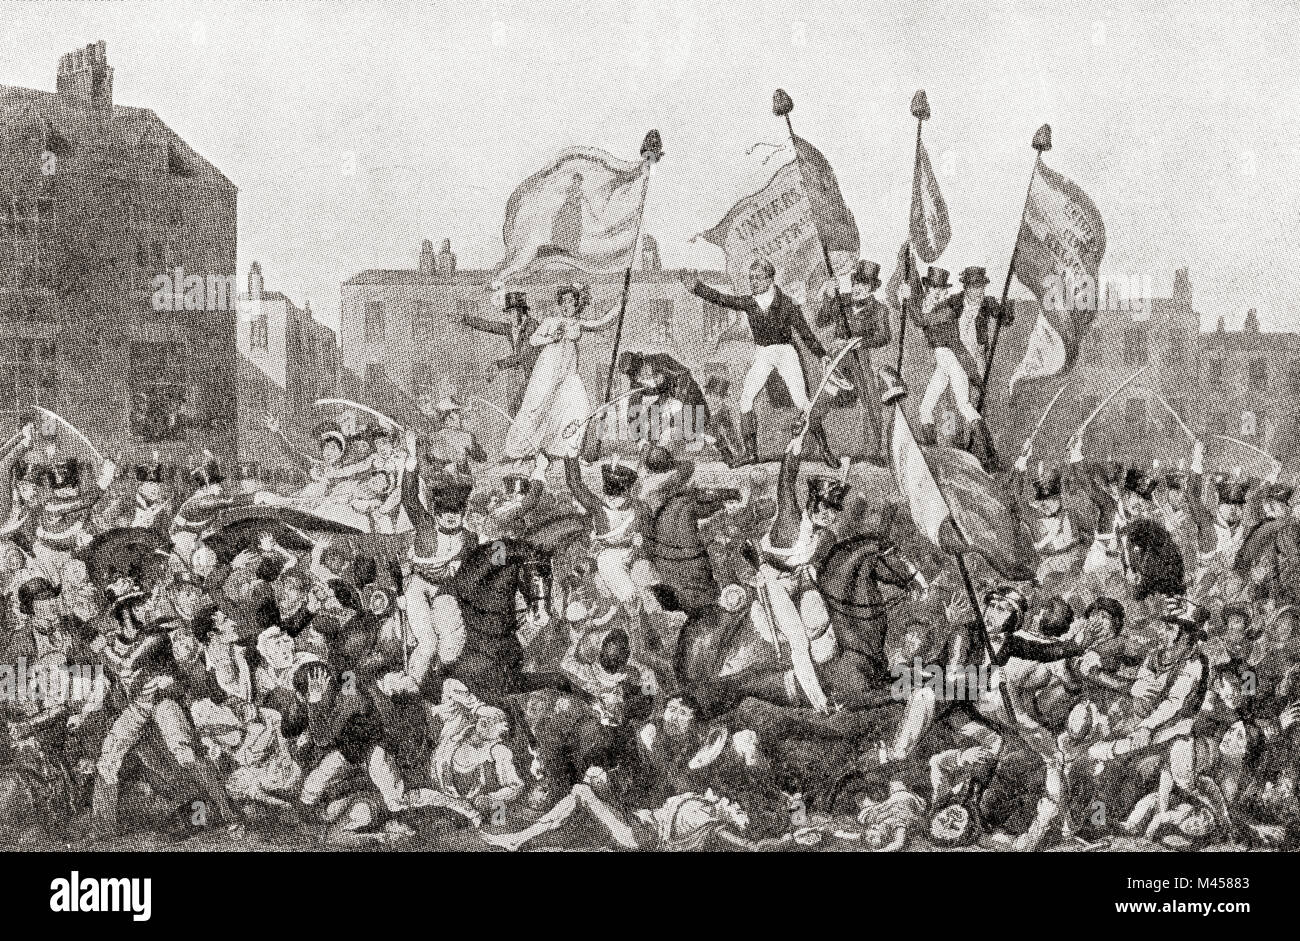 Le massacre de Peterloo, St Peter's Field, Manchester, Angleterre, 1819. La charge de cavalerie sur une foule de 60 000-80 000 qui s'étaient rassemblés pour exiger la réforme de la représentation parlementaire. À partir de les martyrs de Tolpuddle, publié en 1934. Banque D'Images